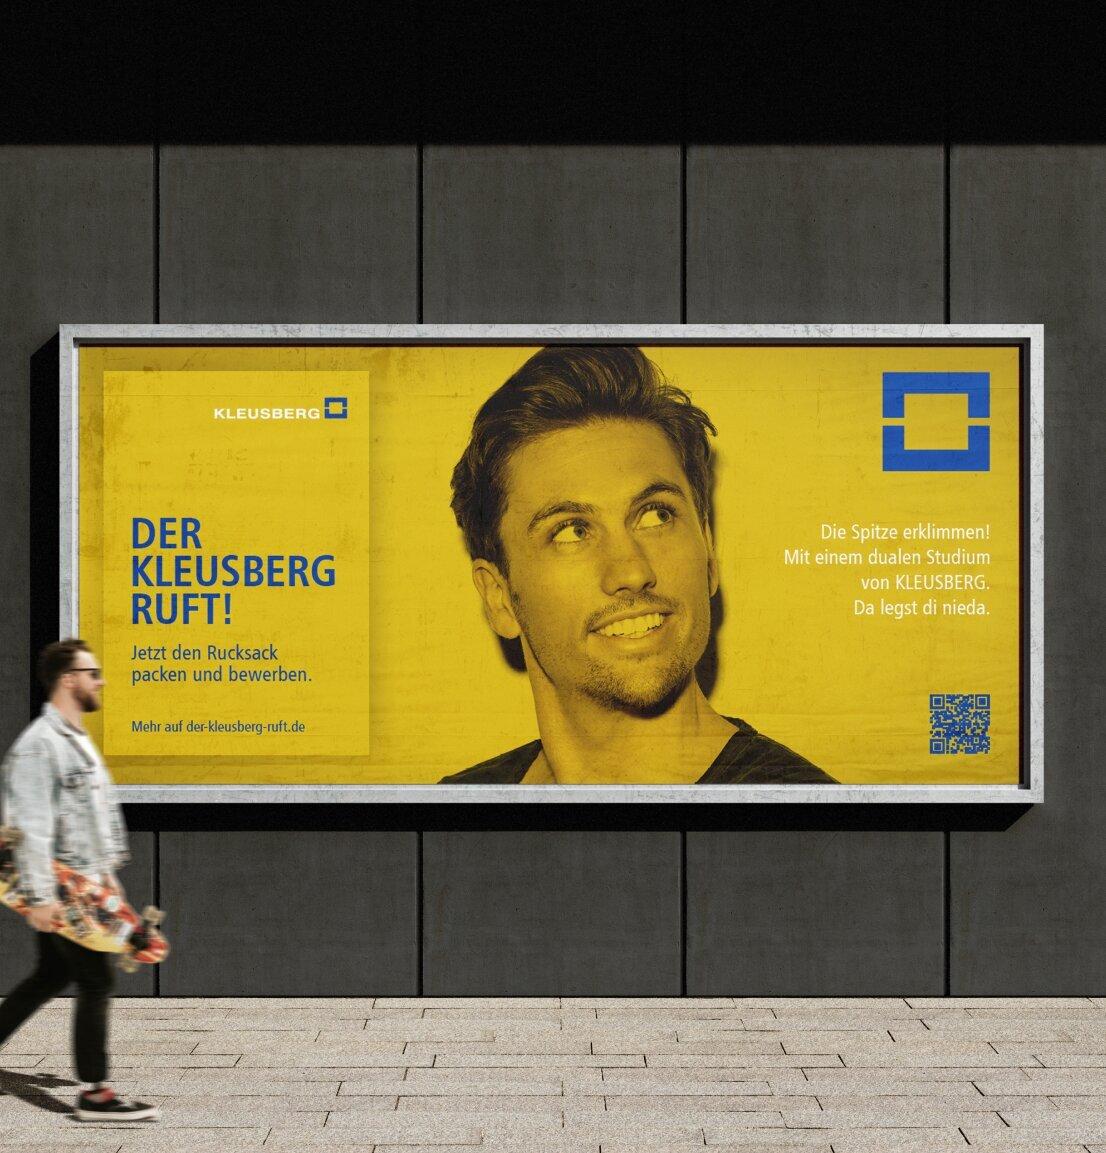 Großflächiges Plakat mit der Kampagne "Der Kleusberg ruft.", hergestellt von der Agentur reaze. 